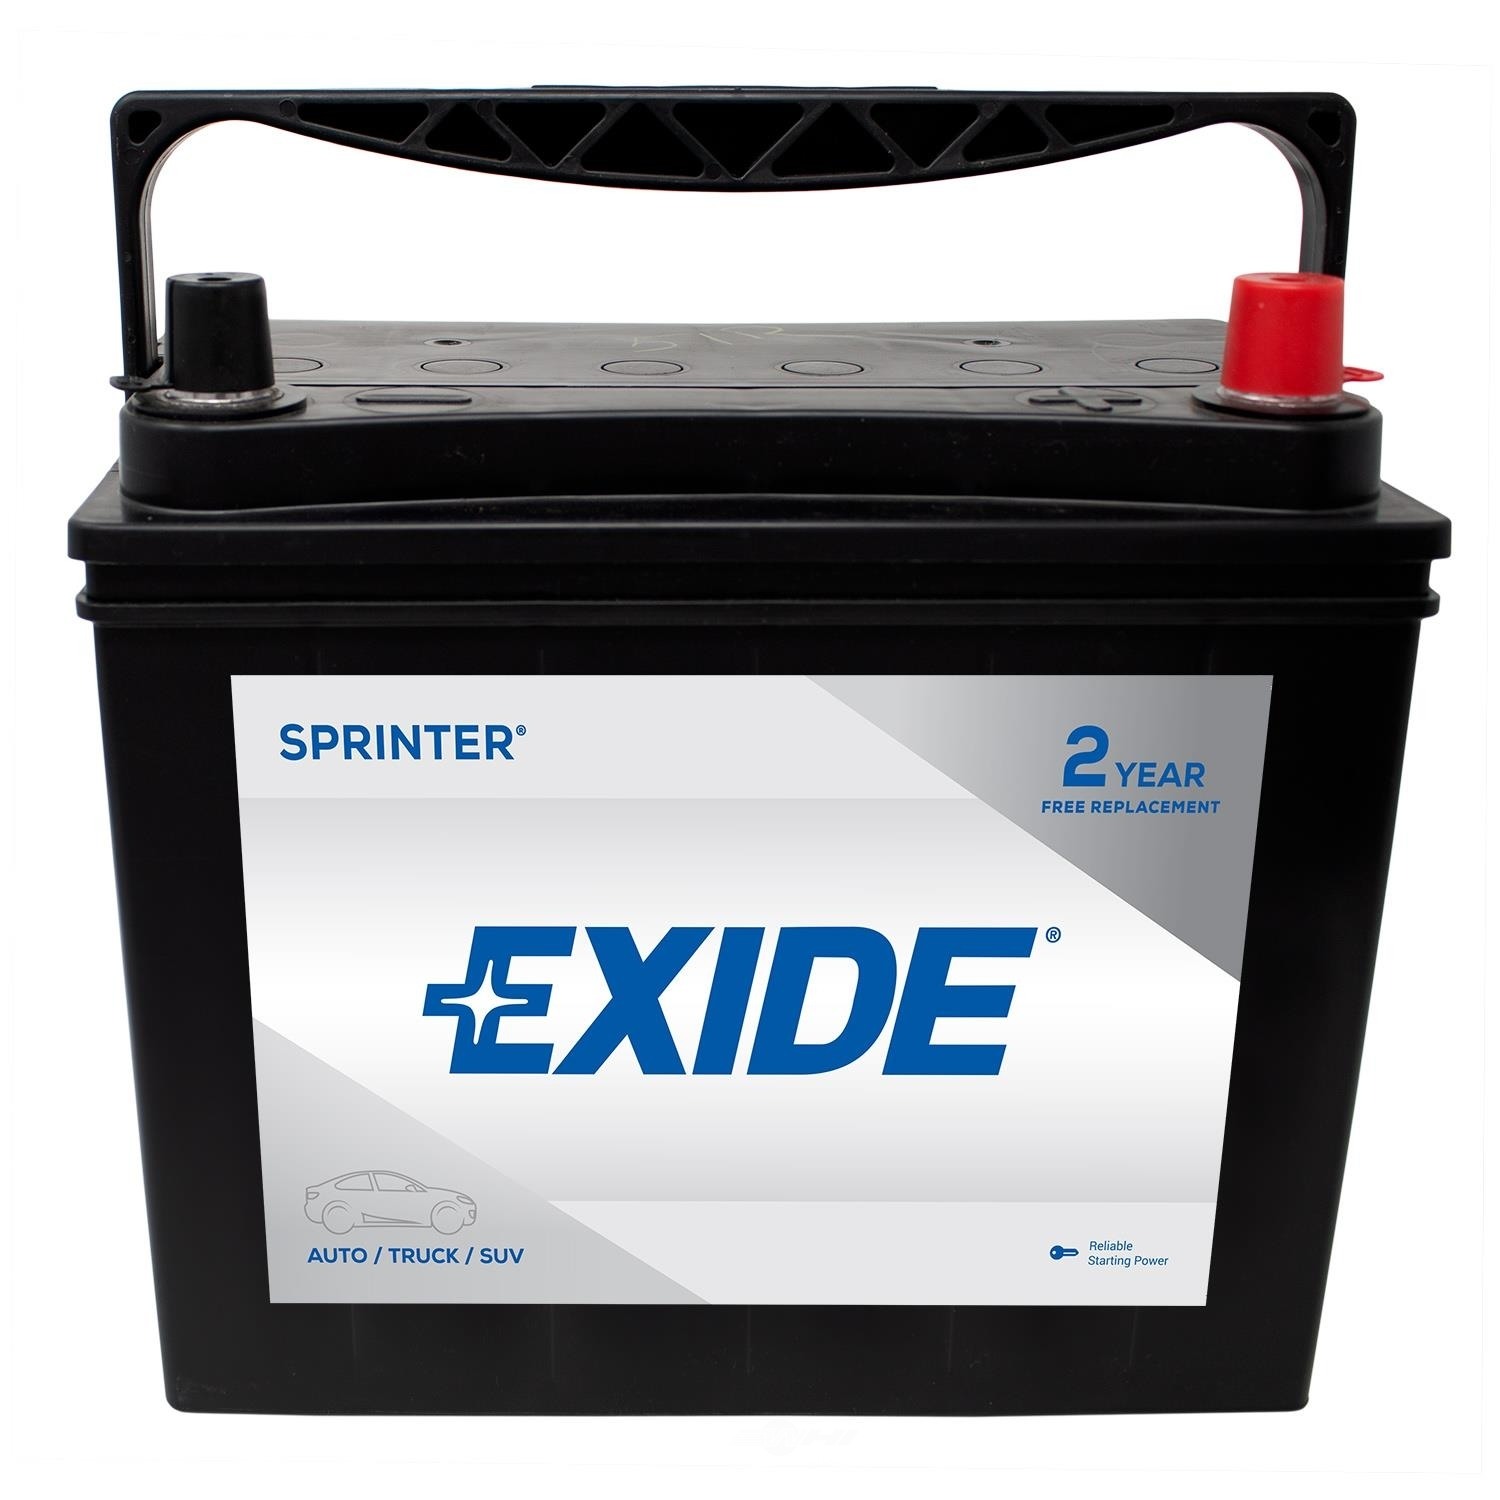 EXIDE BATTERIES - SPRINTER - CCA: 450 - EX1 S51R